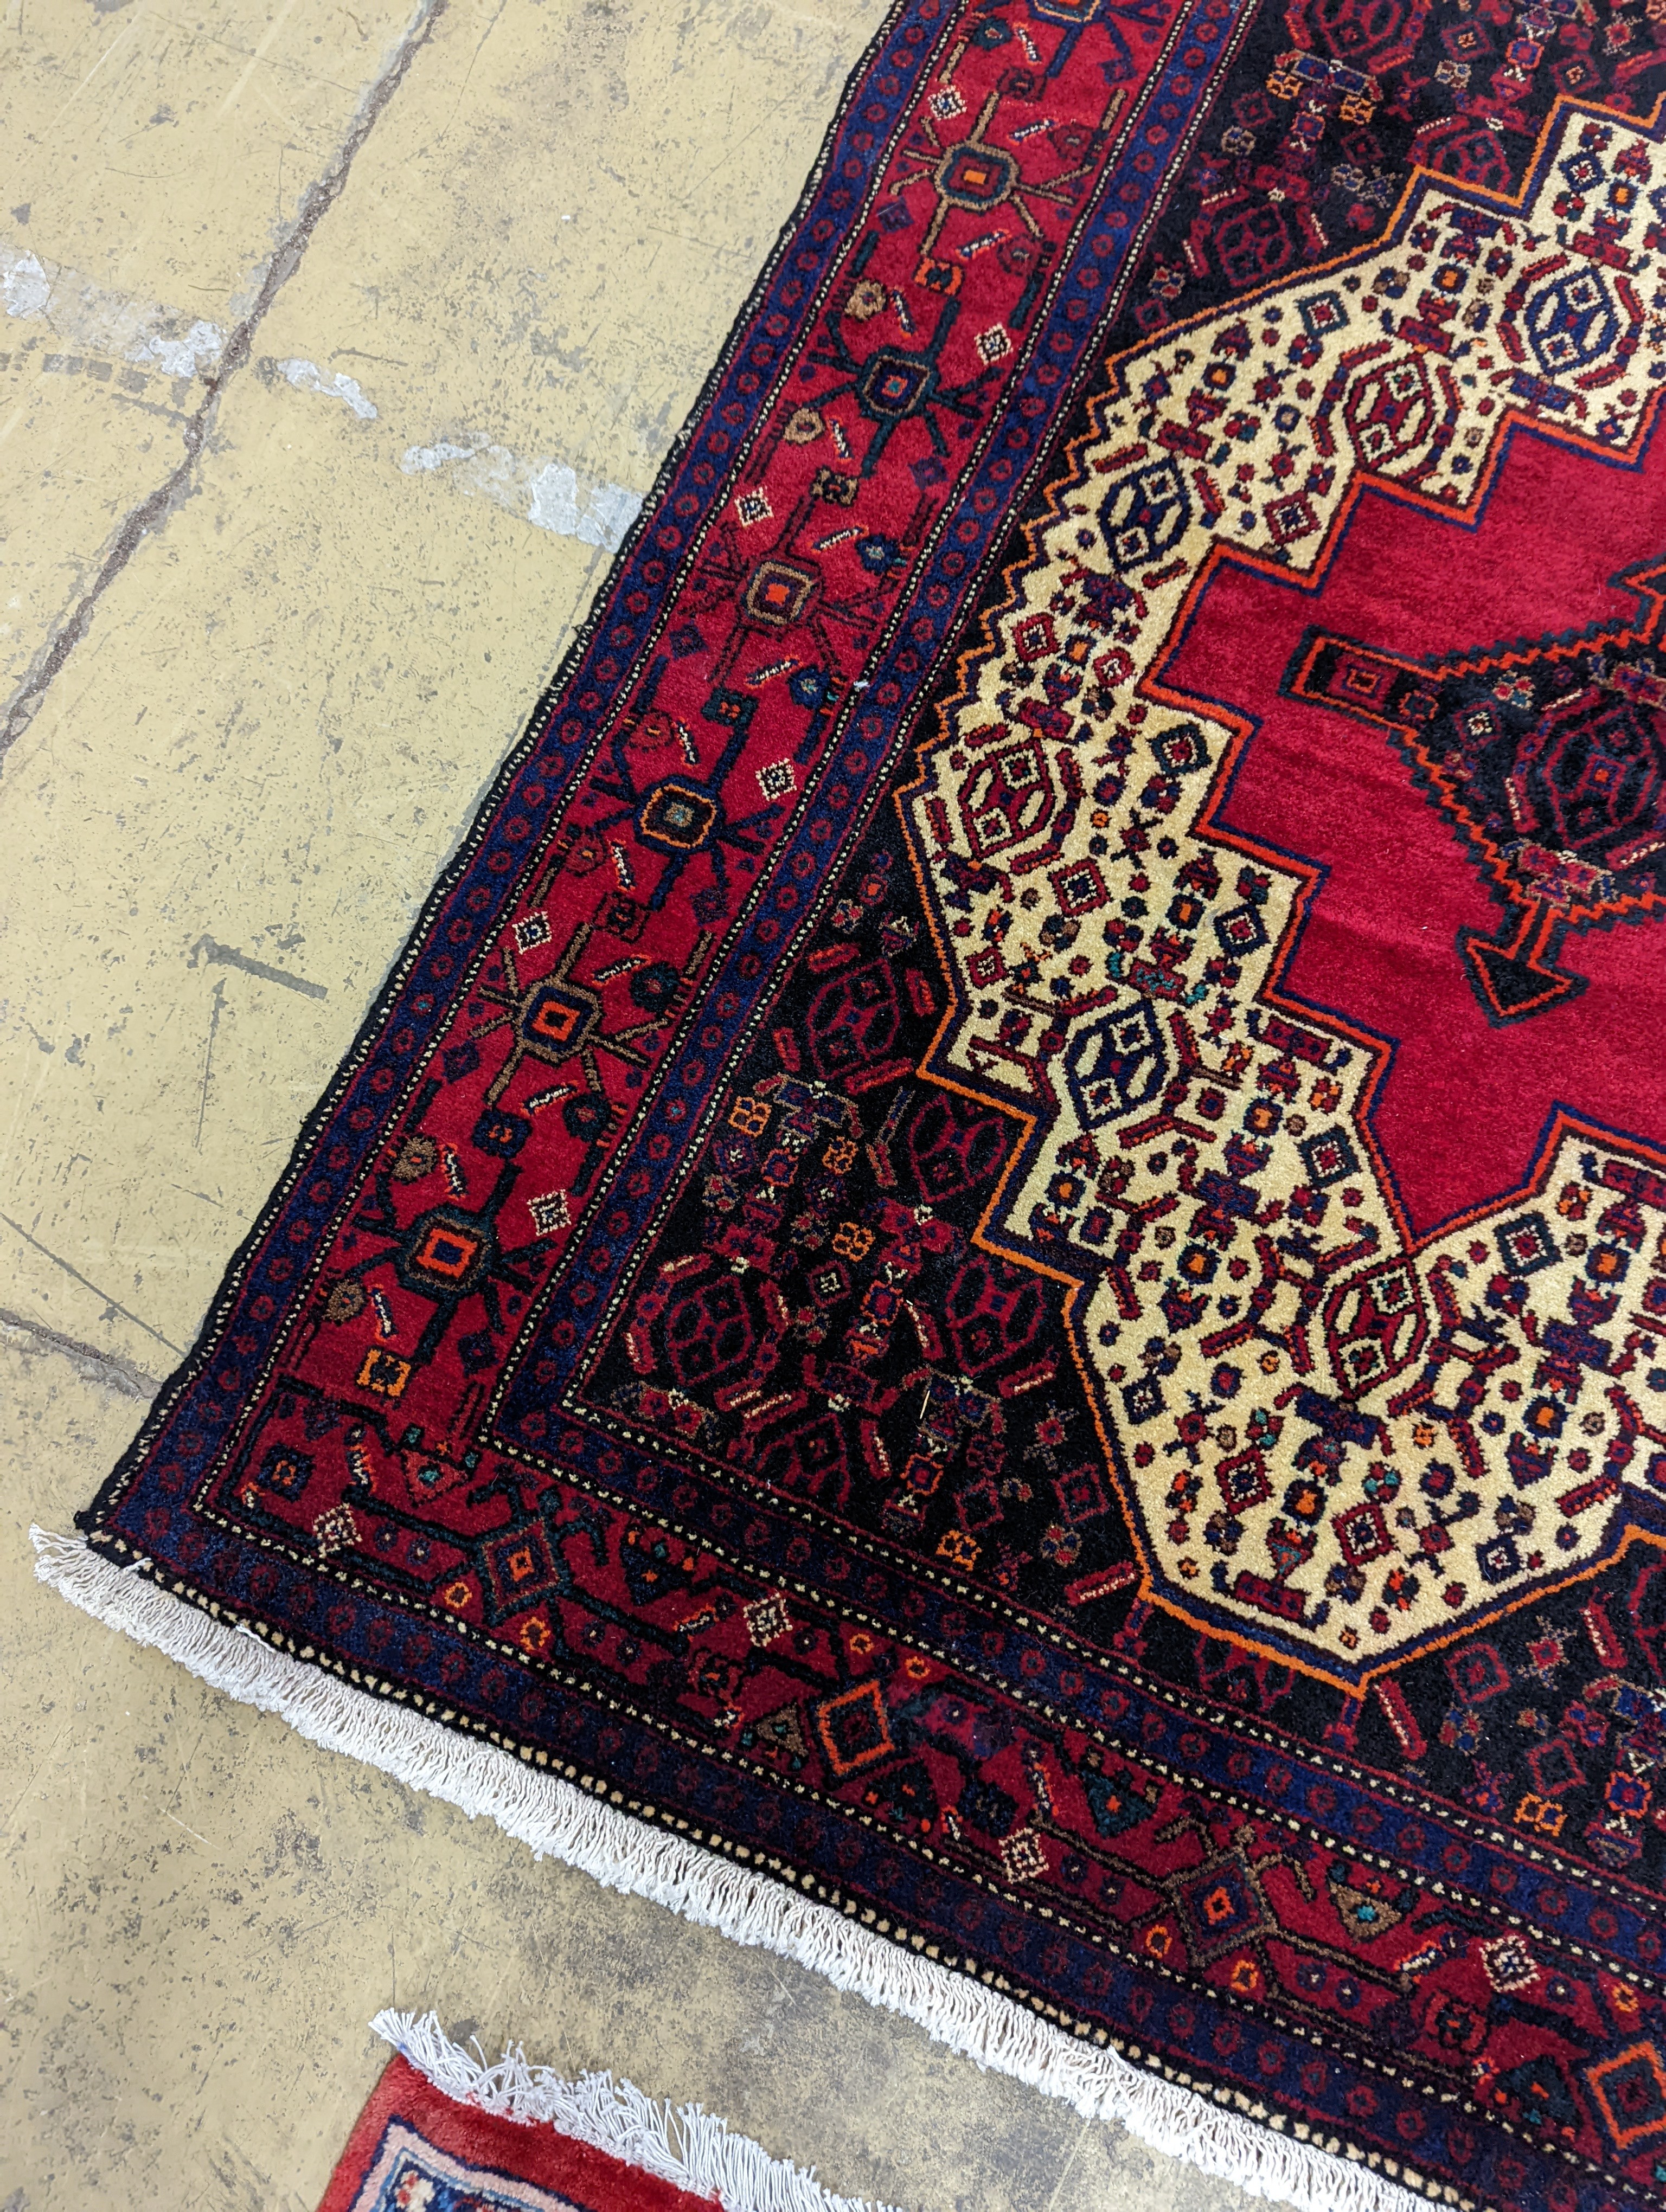 A Shiraz rug, 150 x 120cm